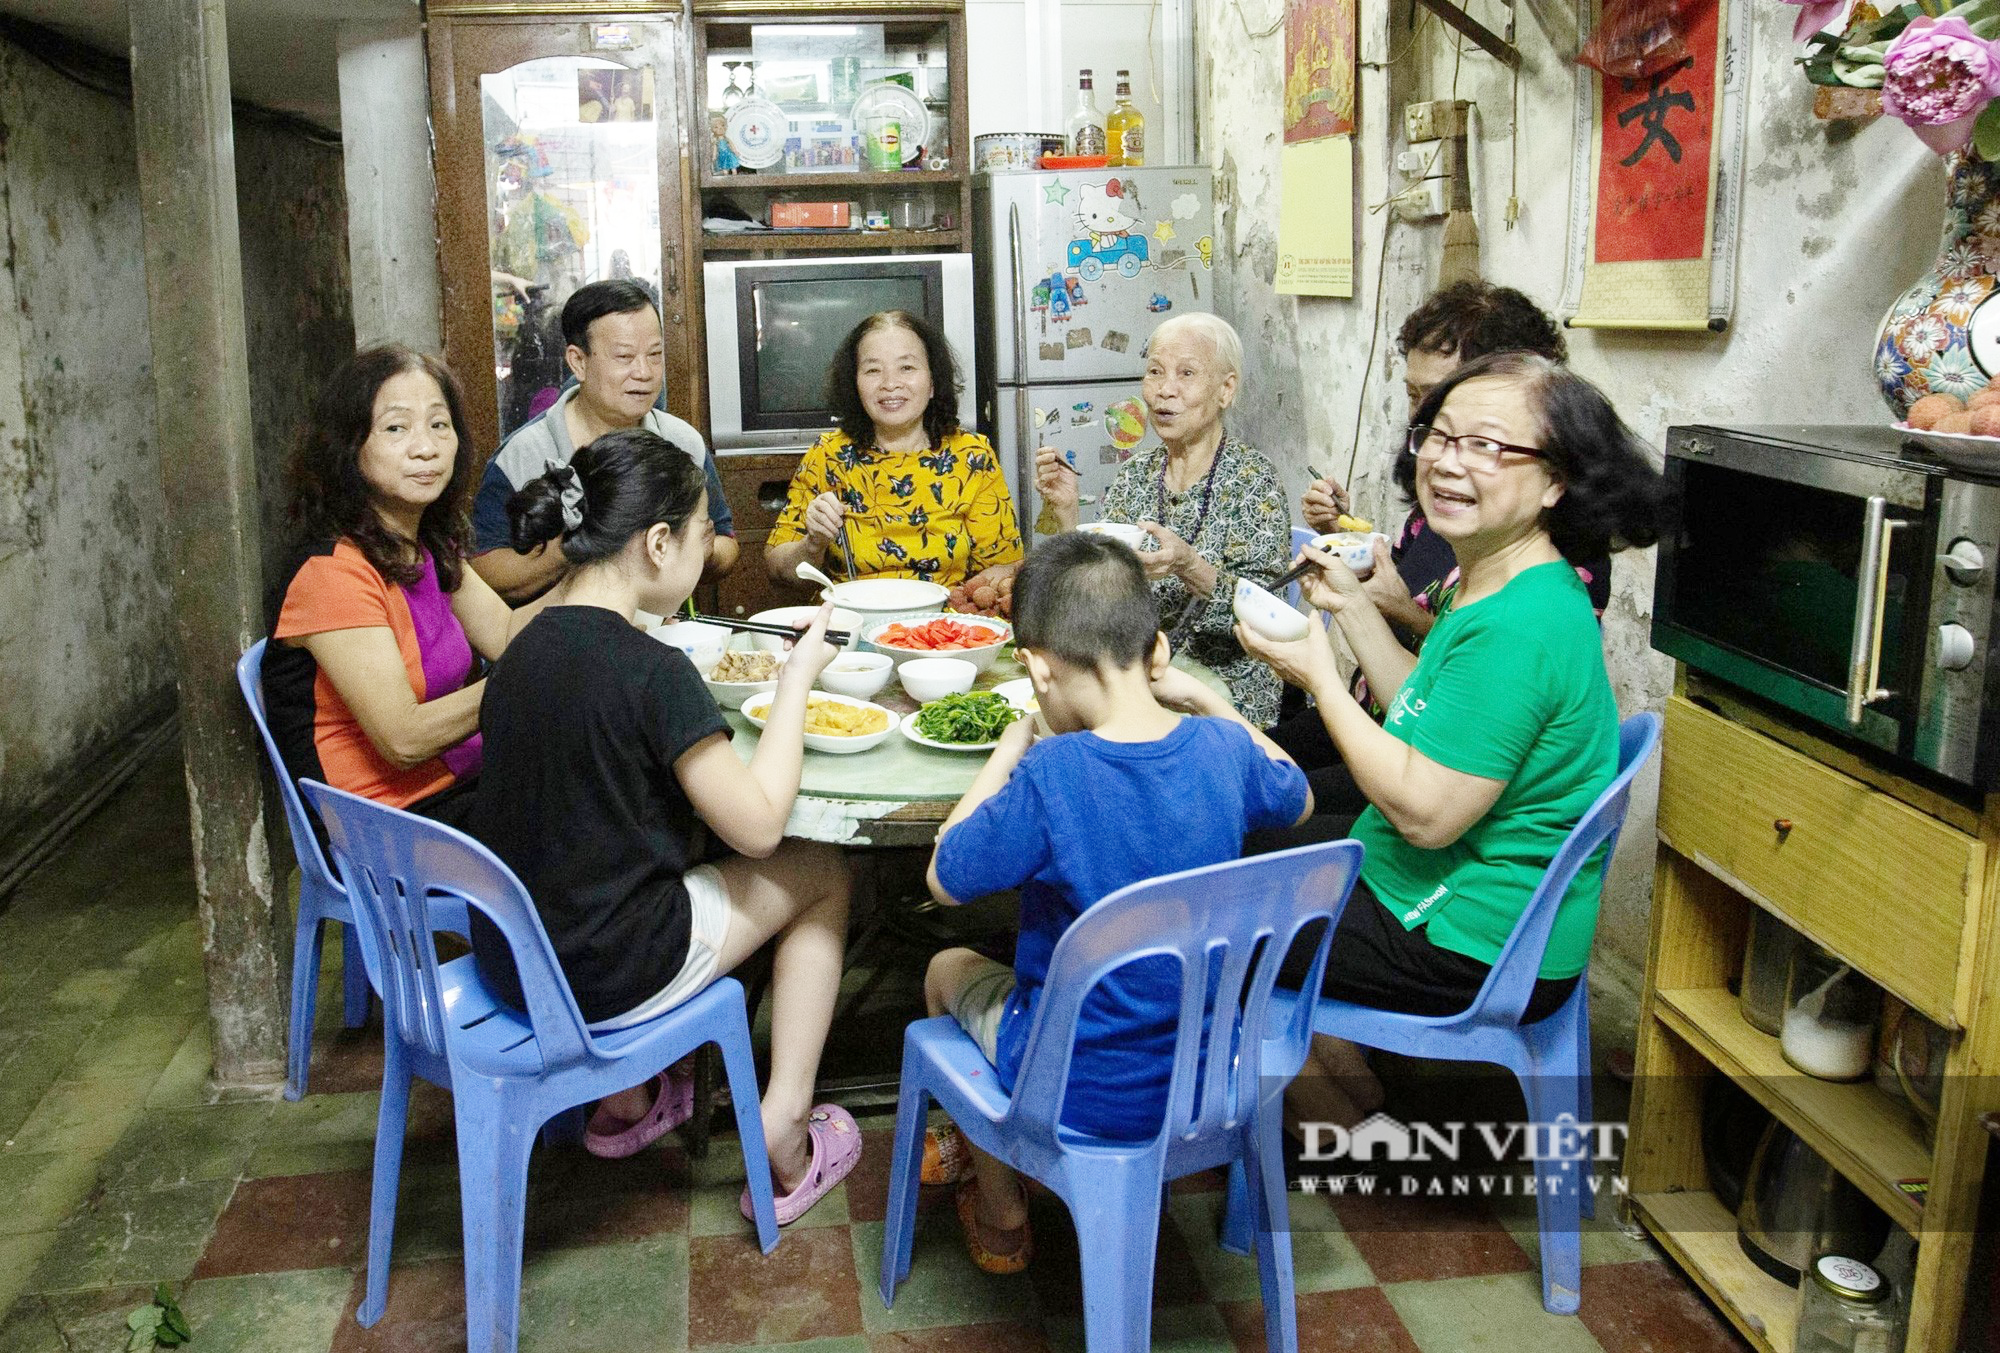 Những người lưu giữ văn hoá, nếp sống đặc biệt Hà Nội: Gia đình tứ đại đồng đường và những món ăn xưa (bài 3) - Ảnh 1.